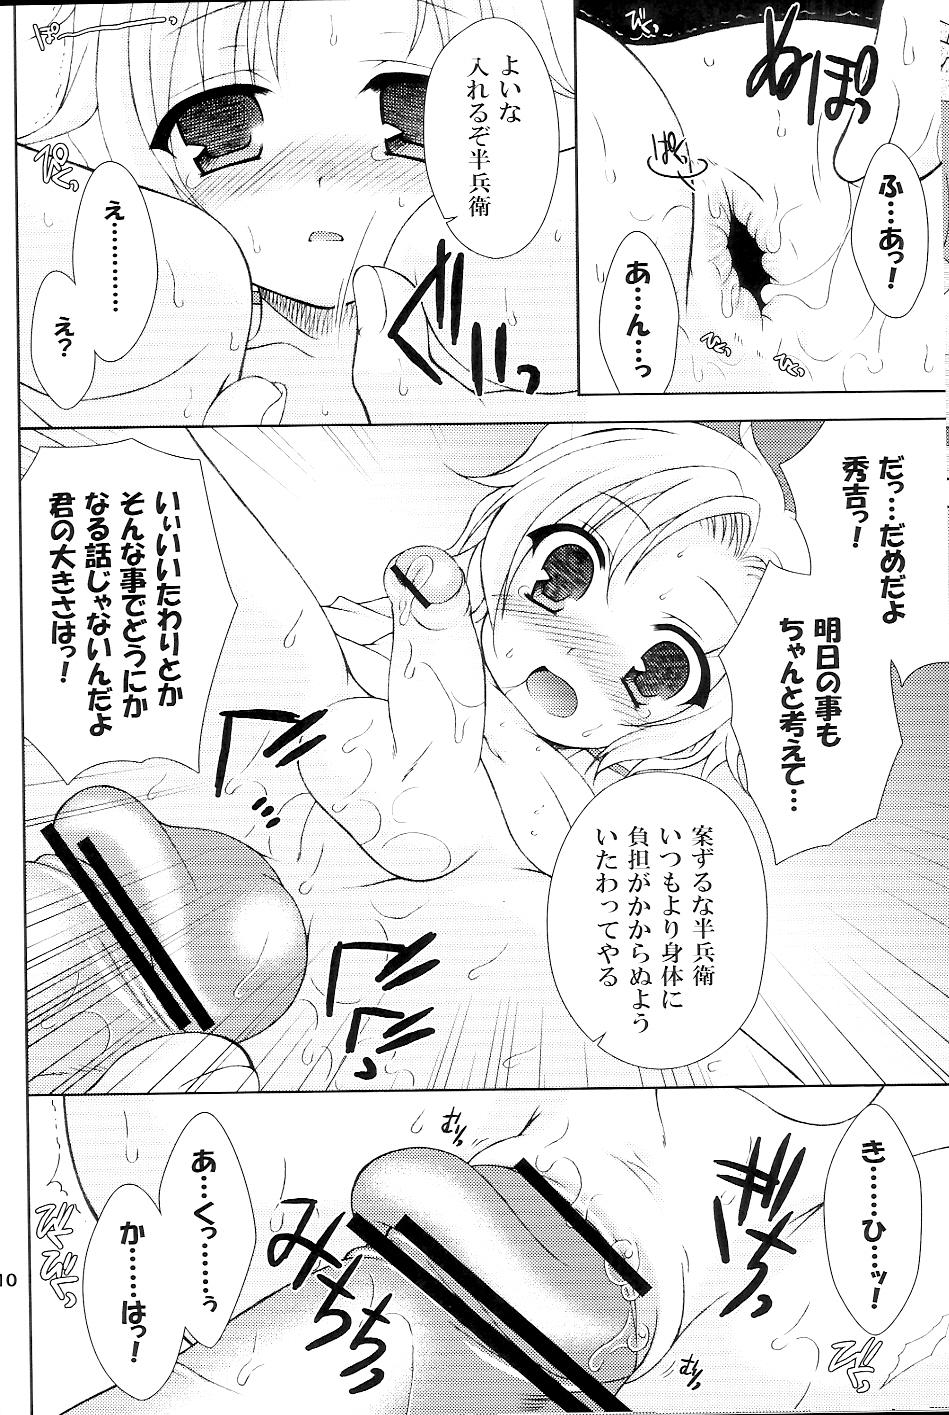 Tetona Sairoku March - Sengoku basara Game - Page 9